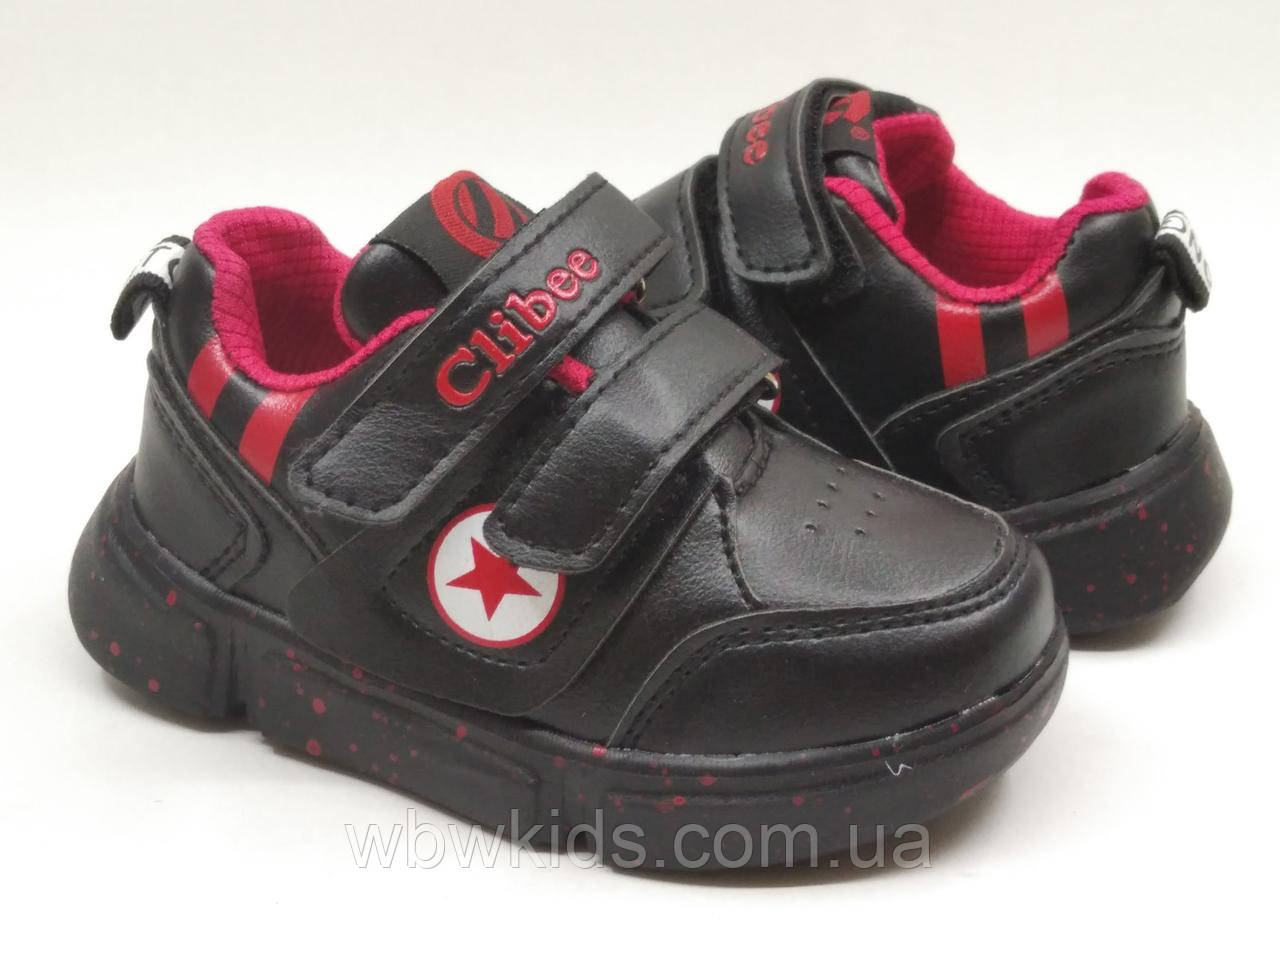 

Кросівки дитячі Clibee L-98 для хлопчика чорні 22